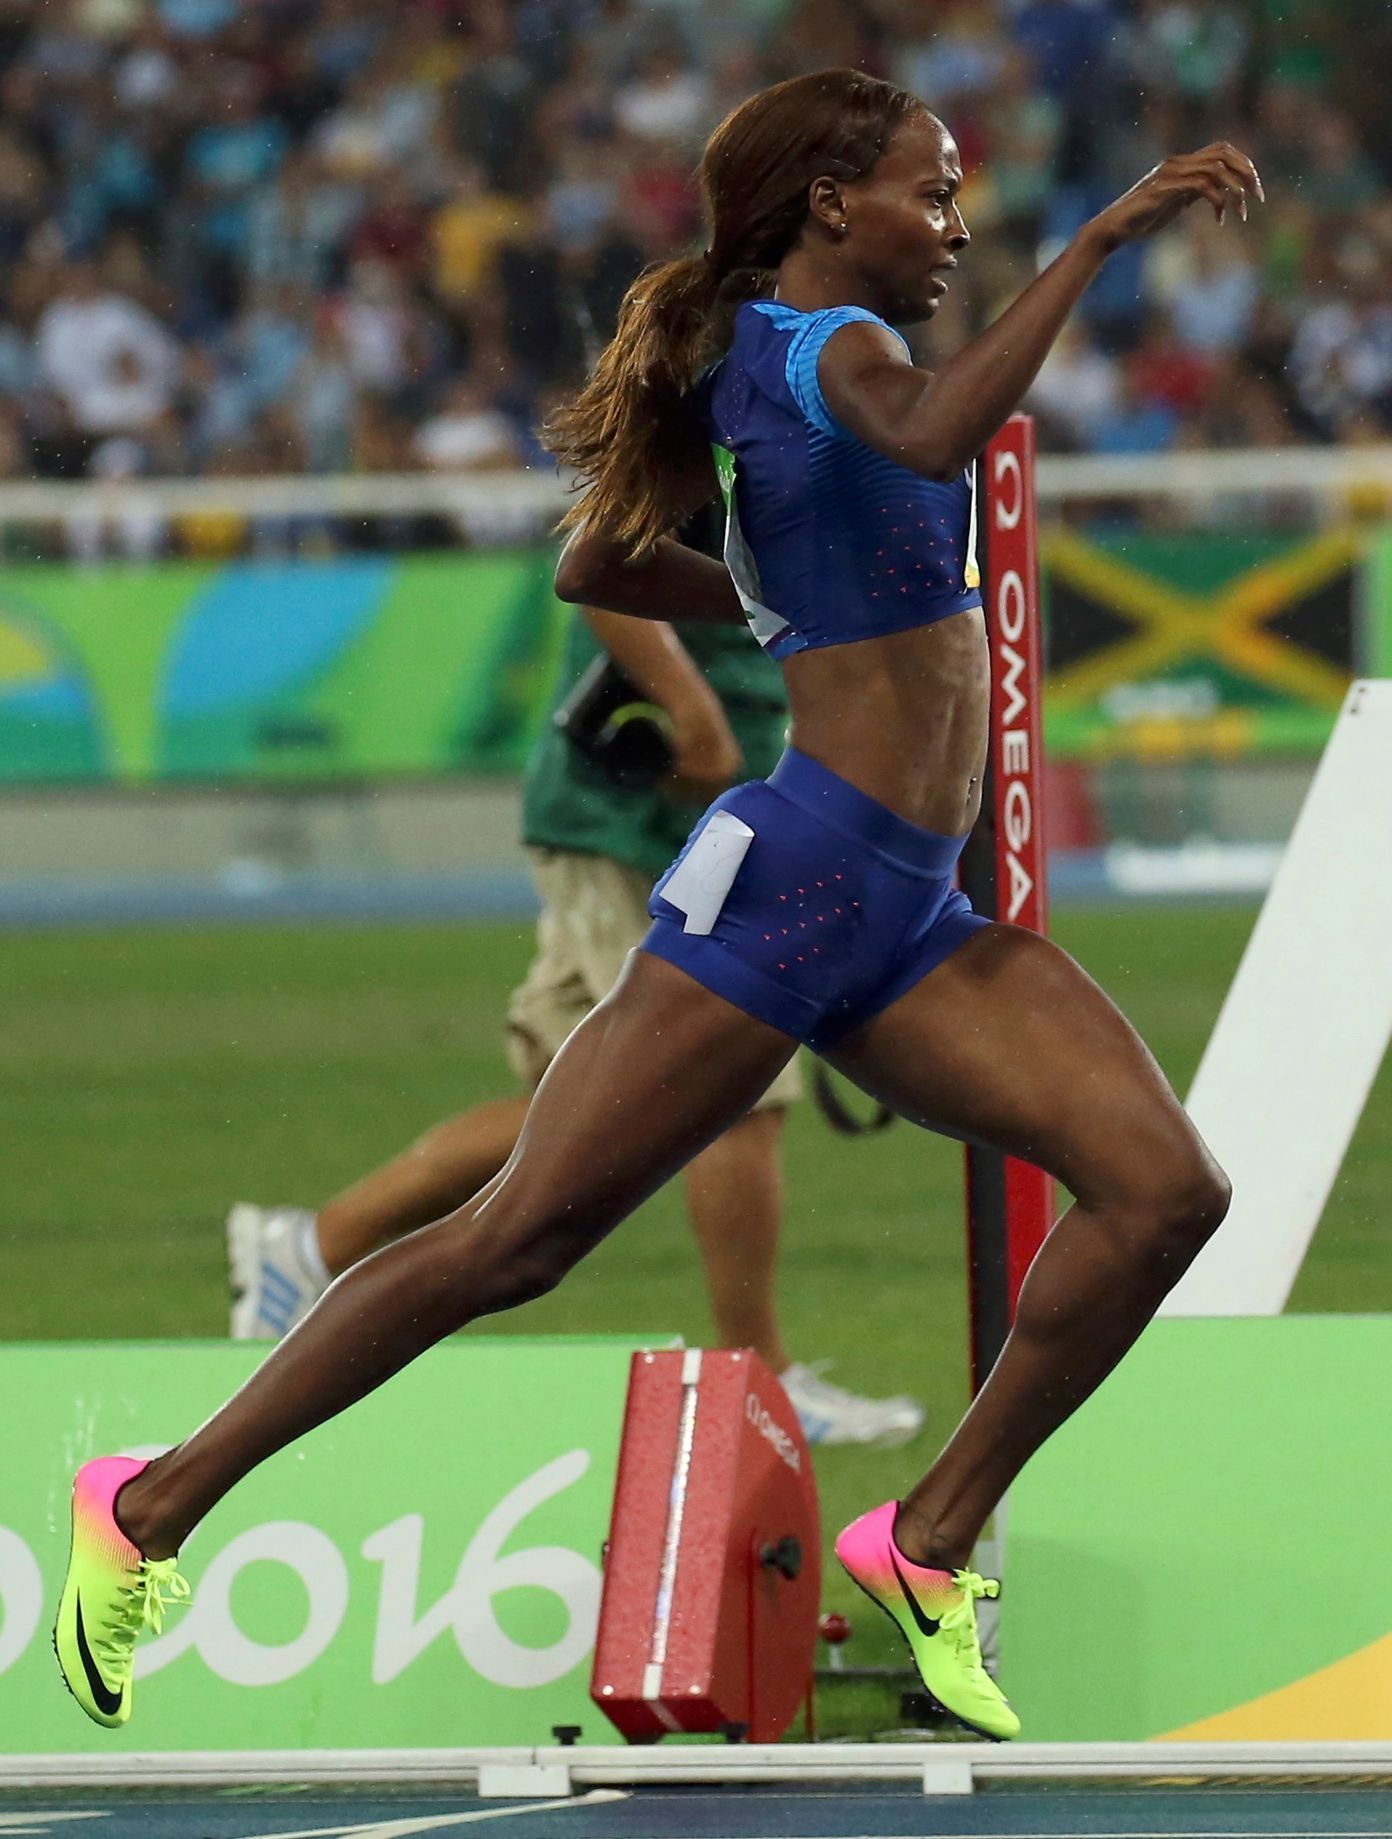 OH 2016, atletika-400 m př. Ž: Dalilah Muhammadová, USA